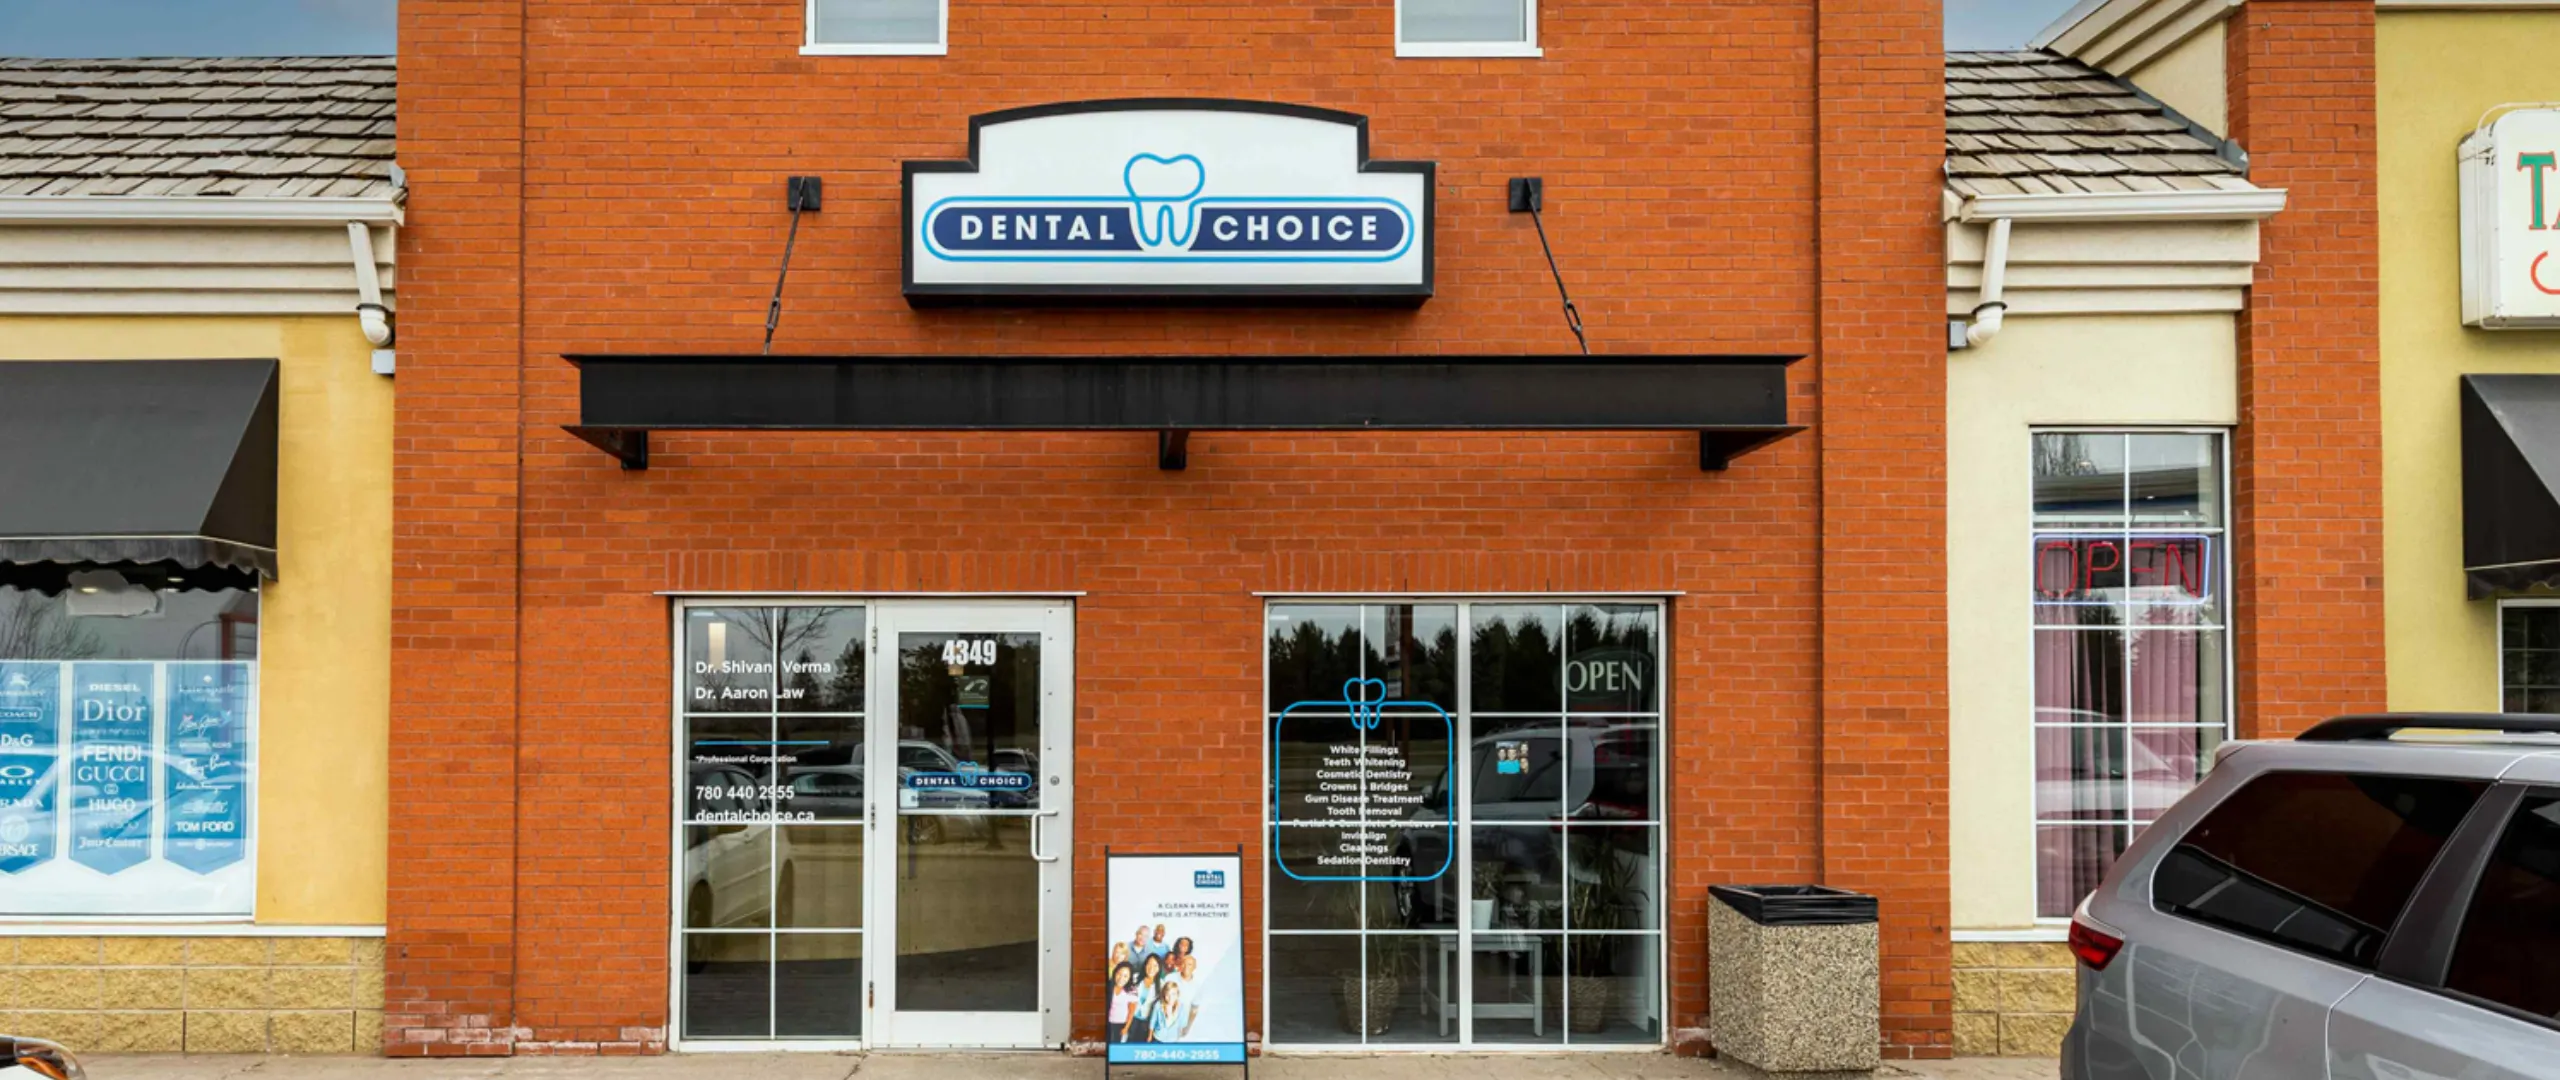 50 street Dental Choice